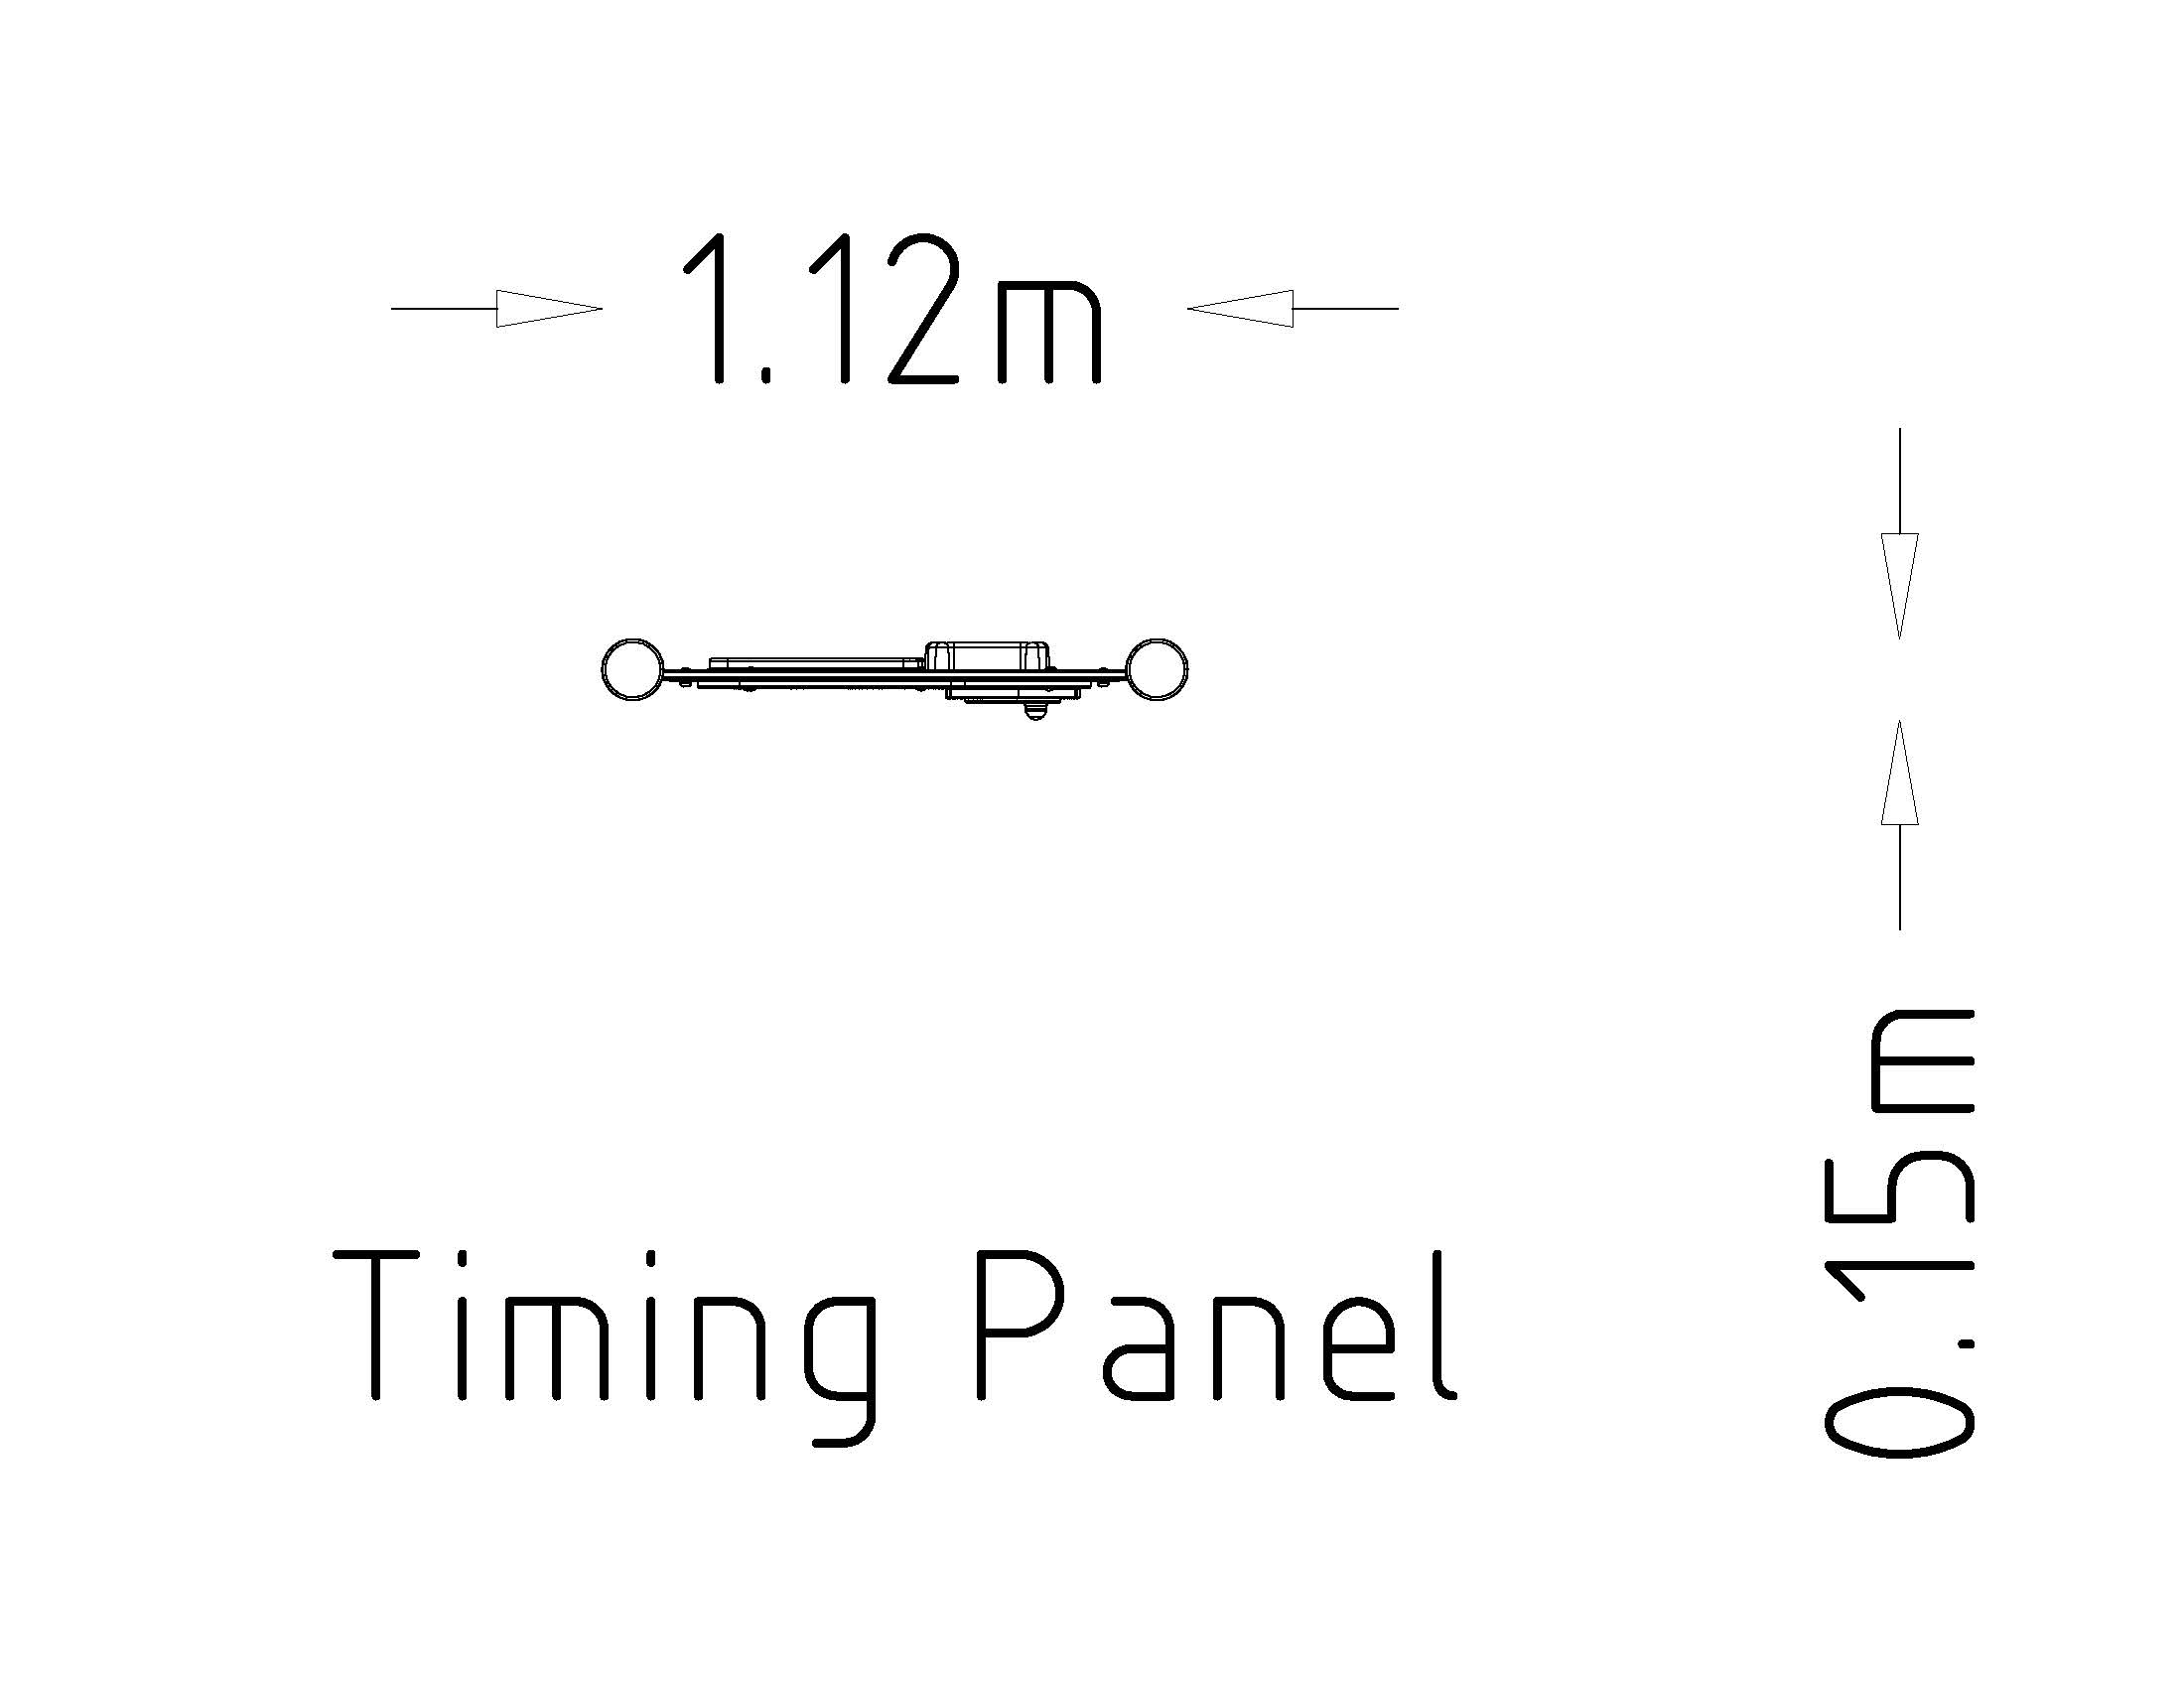 Timing Panel